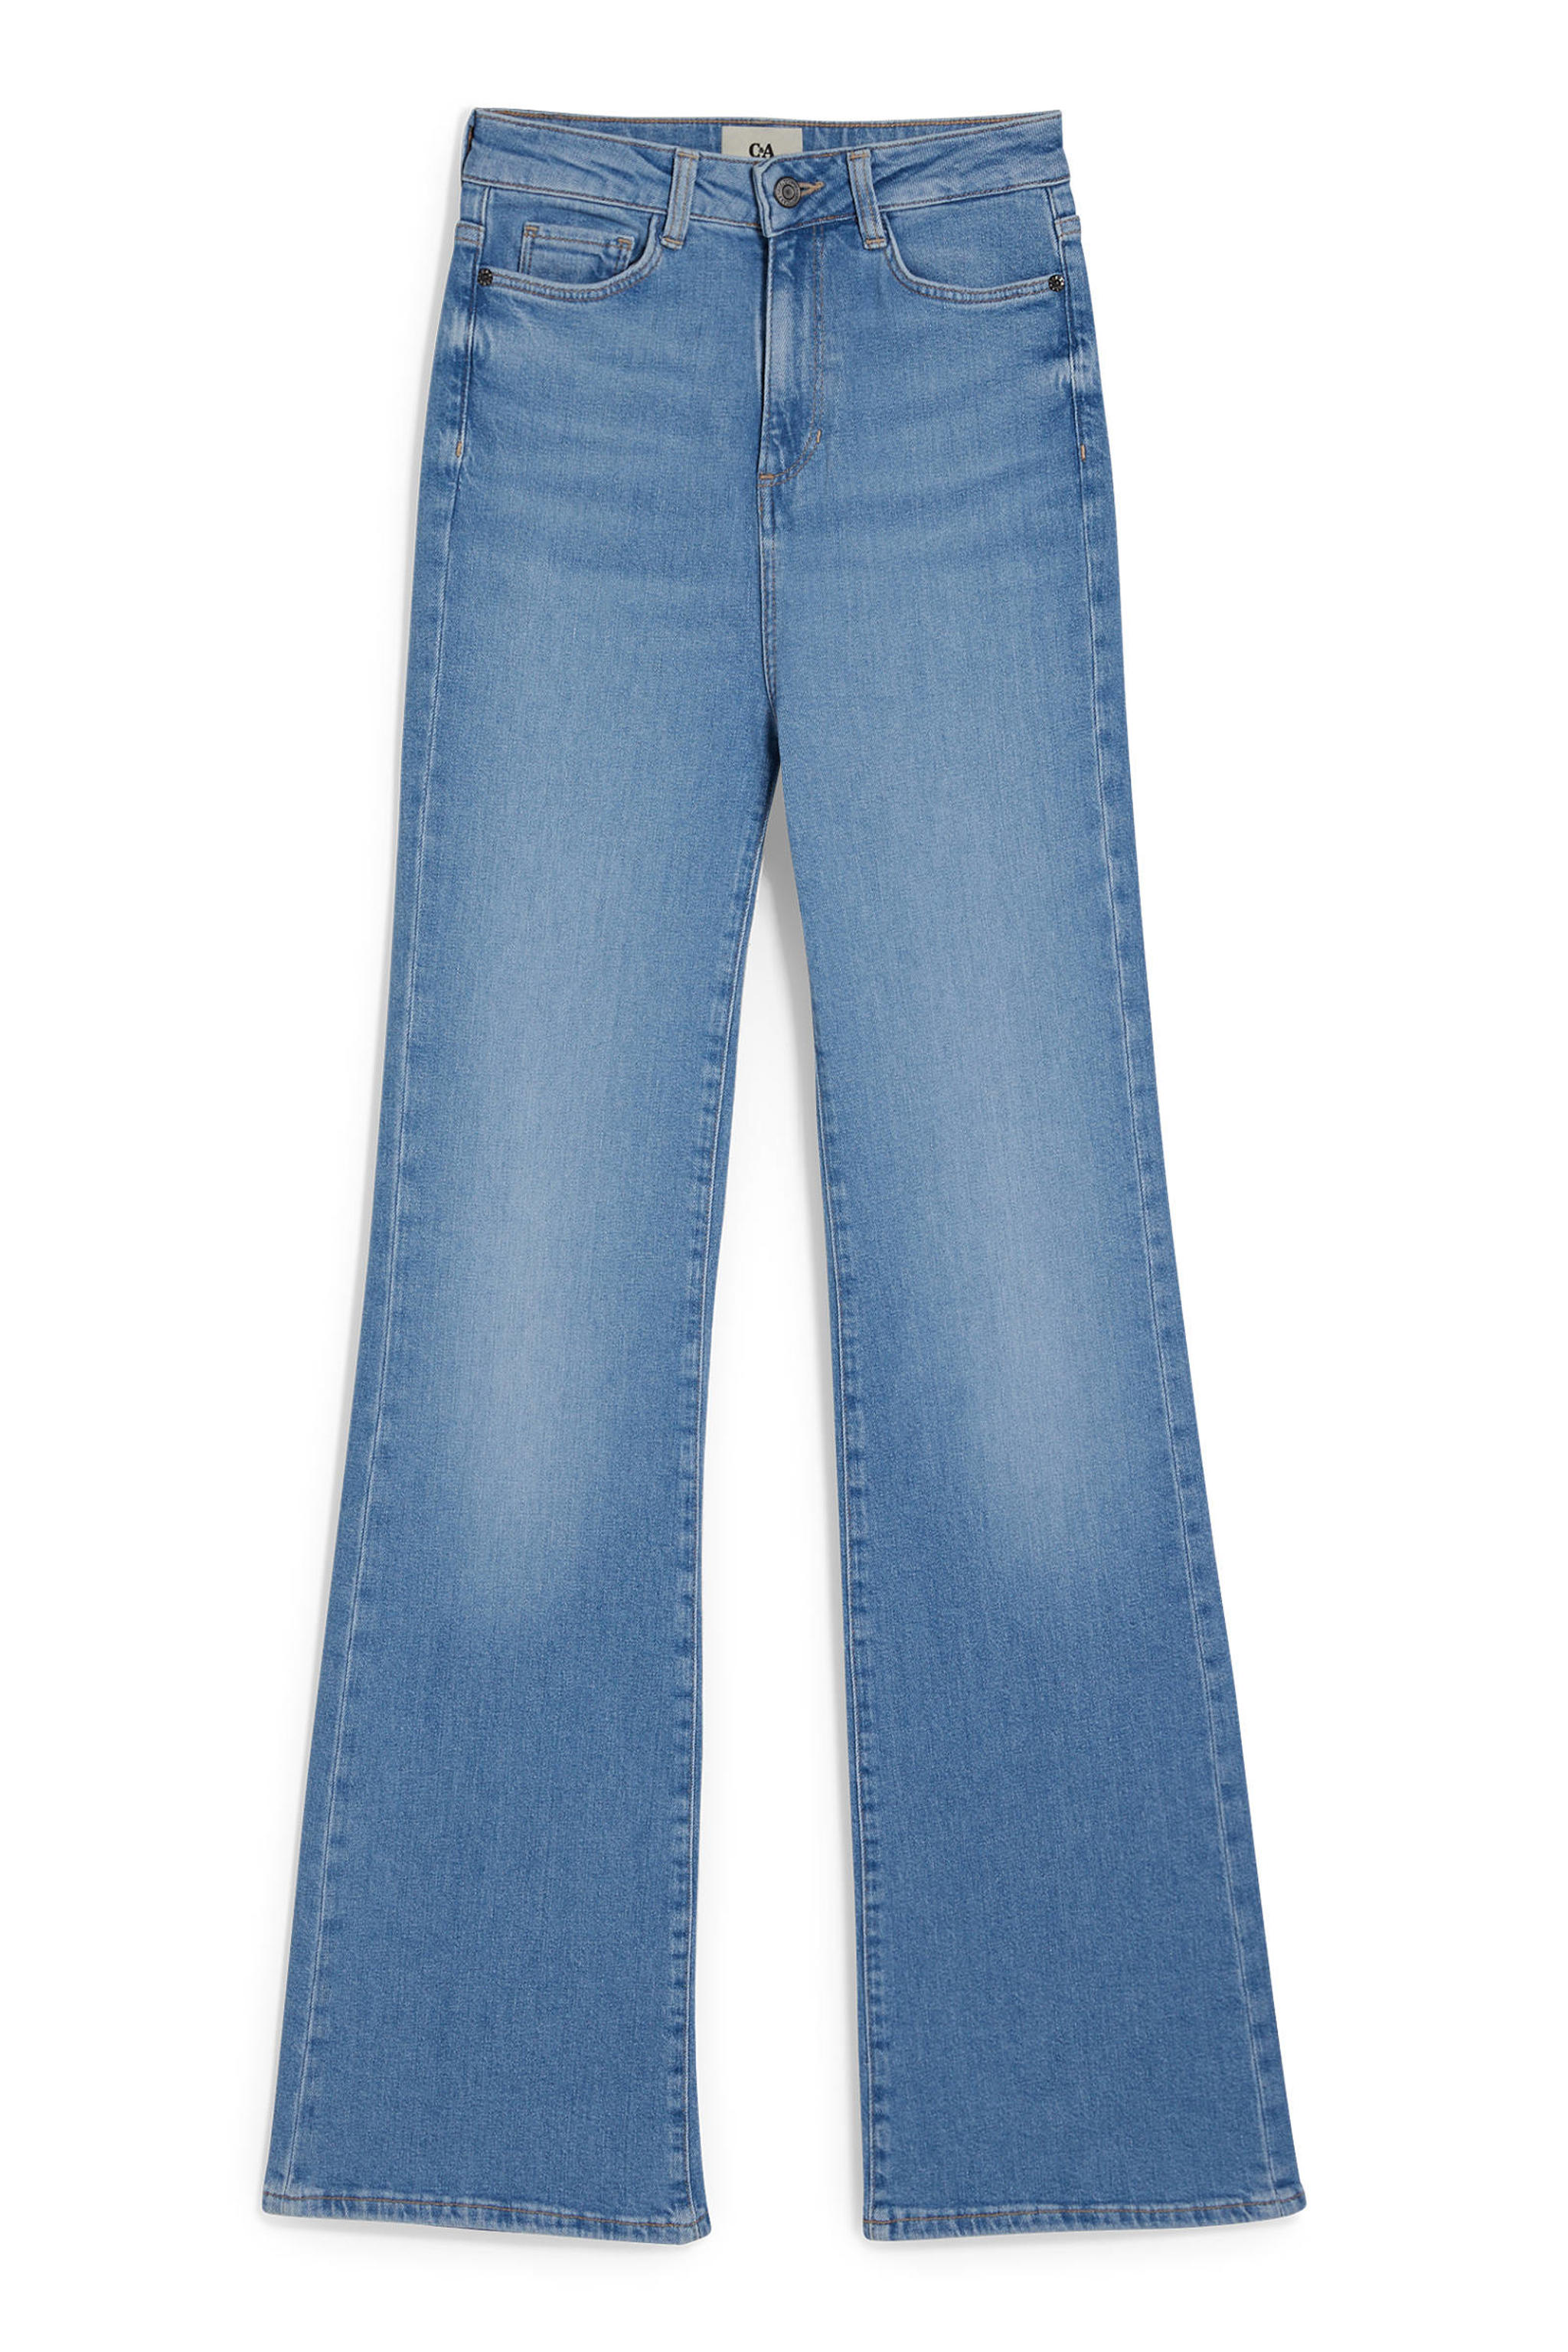 C&A high waist flared jeans light blue denim | wehkamp